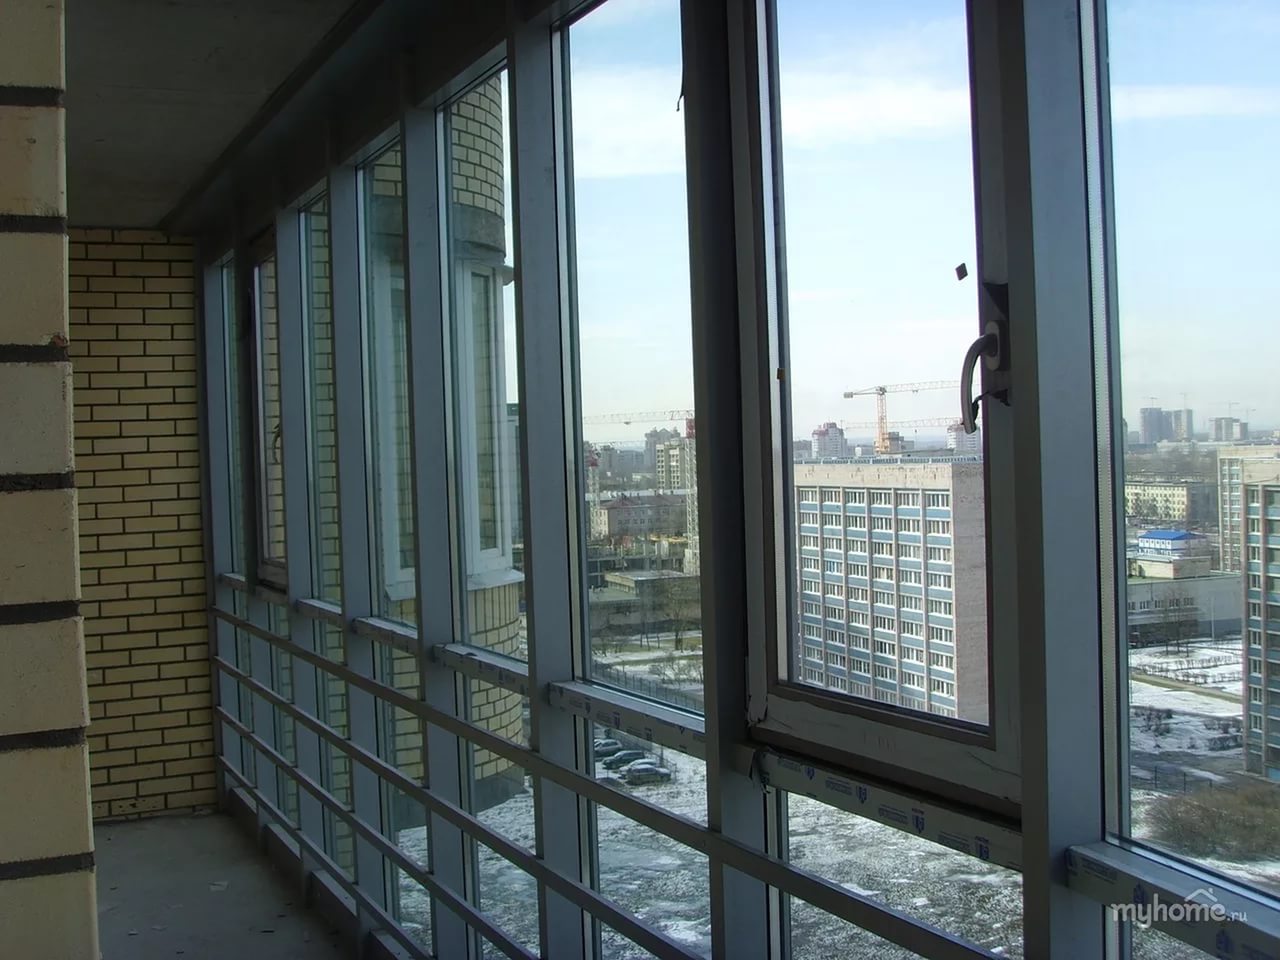 Замена холодного панорамного остекления балкона и лоджии на теплое в москве и московской области. утепление холодного панорамного остекления - goodmaster.su